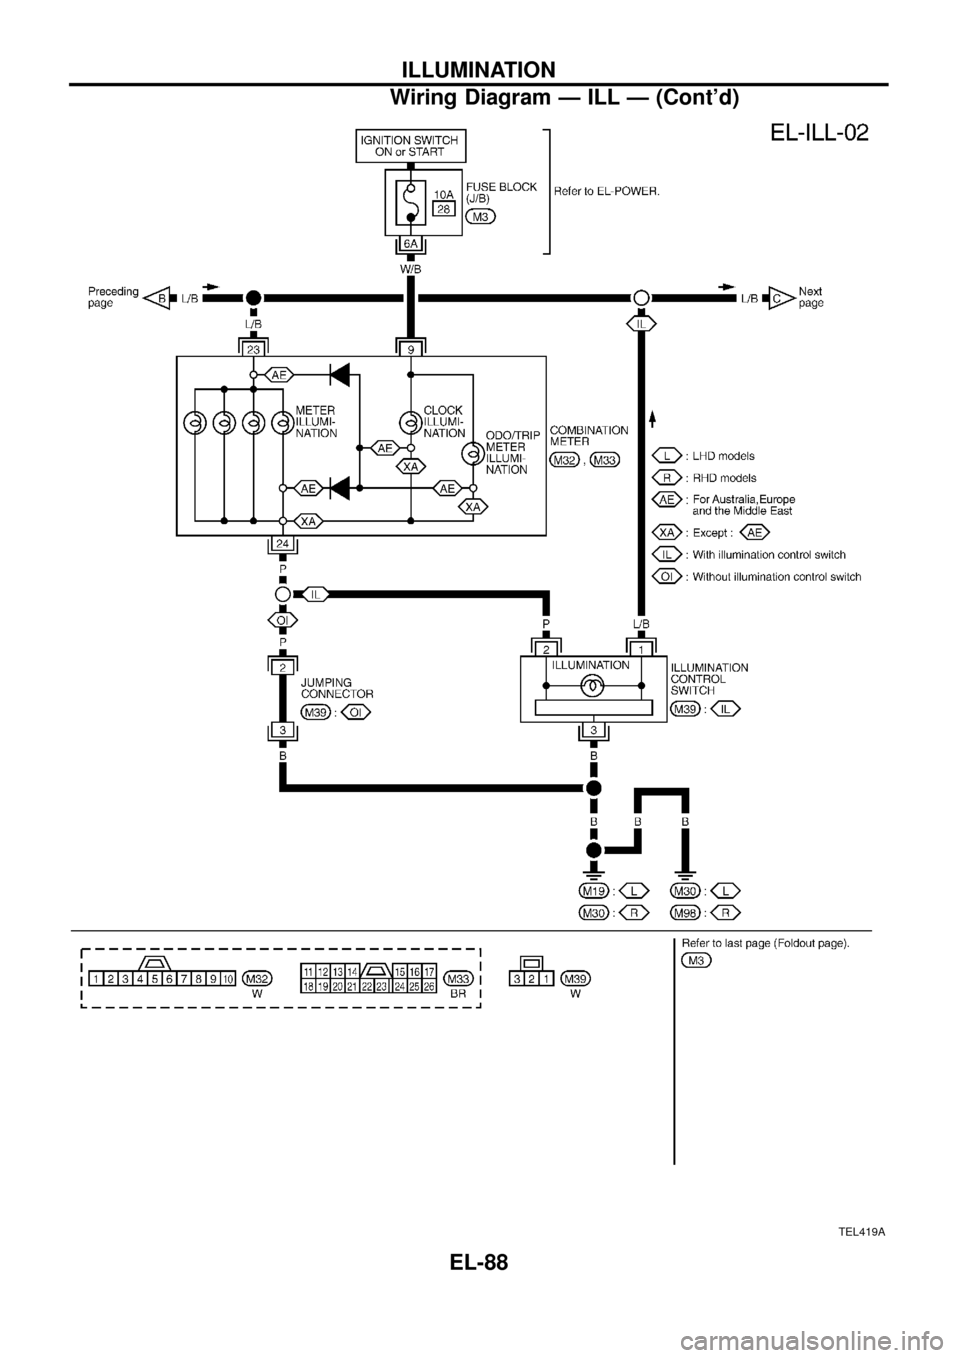 NISSAN PATROL 1998 Y61 / 5.G Electrical System Owners Guide TEL419A
ILLUMINATION
Wiring Diagram Ð ILL Ð (Contd)
EL-88 